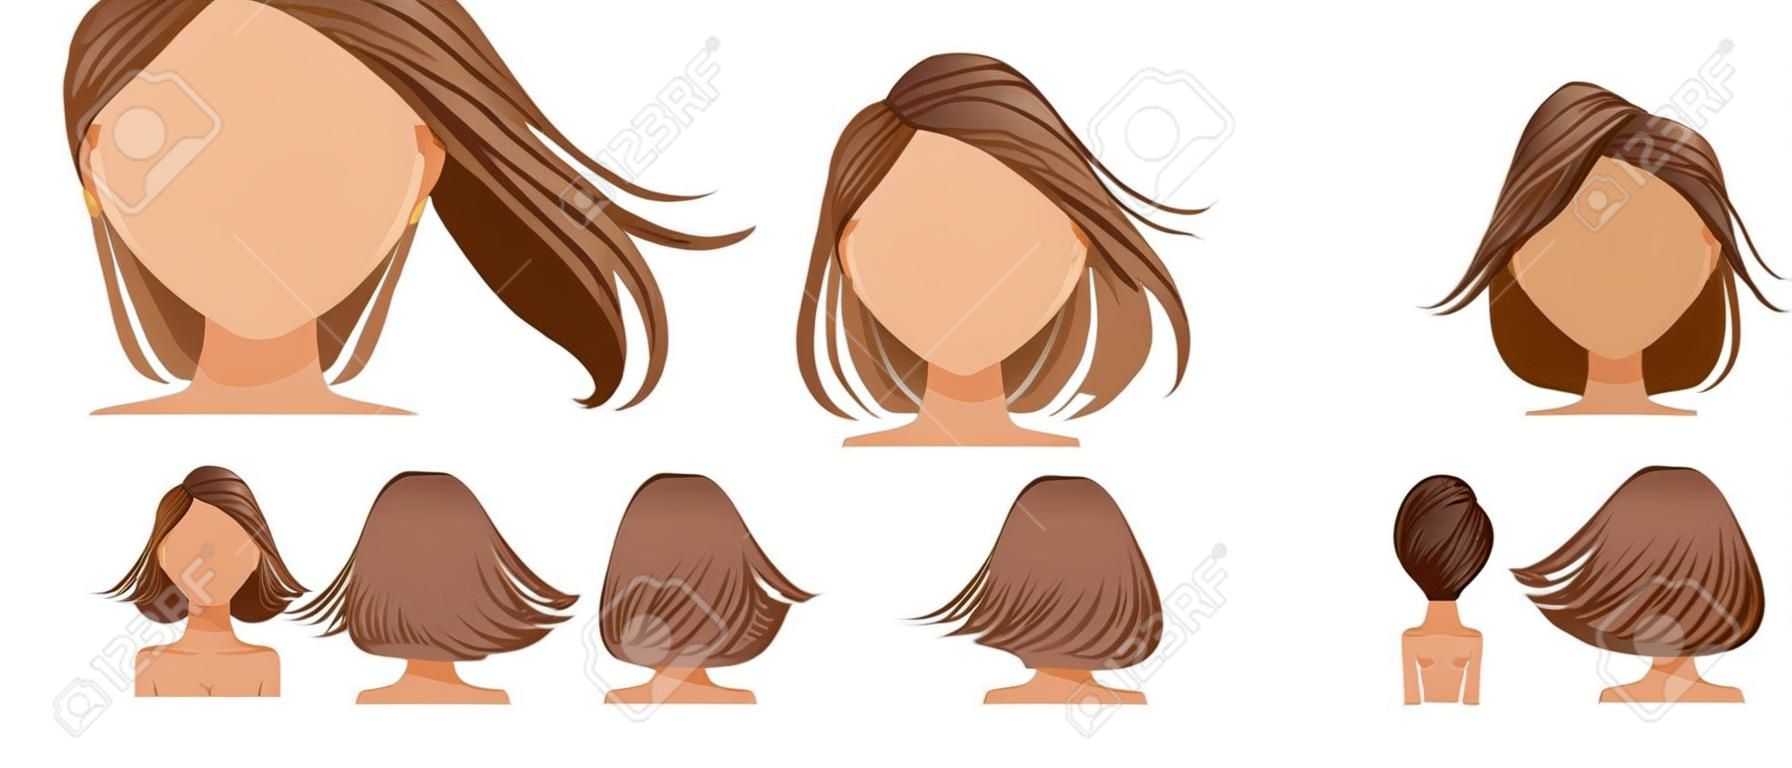 머리를 날린 여성 세트. 넓은 시야에서 머리카락이 날아갑니다. 앞, 뒤, 왼쪽, 오른쪽. 여성의 아름다운 헤어스타일 갈색 짧은 머리. 트렌디한 이발. 벡터 아이콘 세트 흰색 배경에 고립입니다.